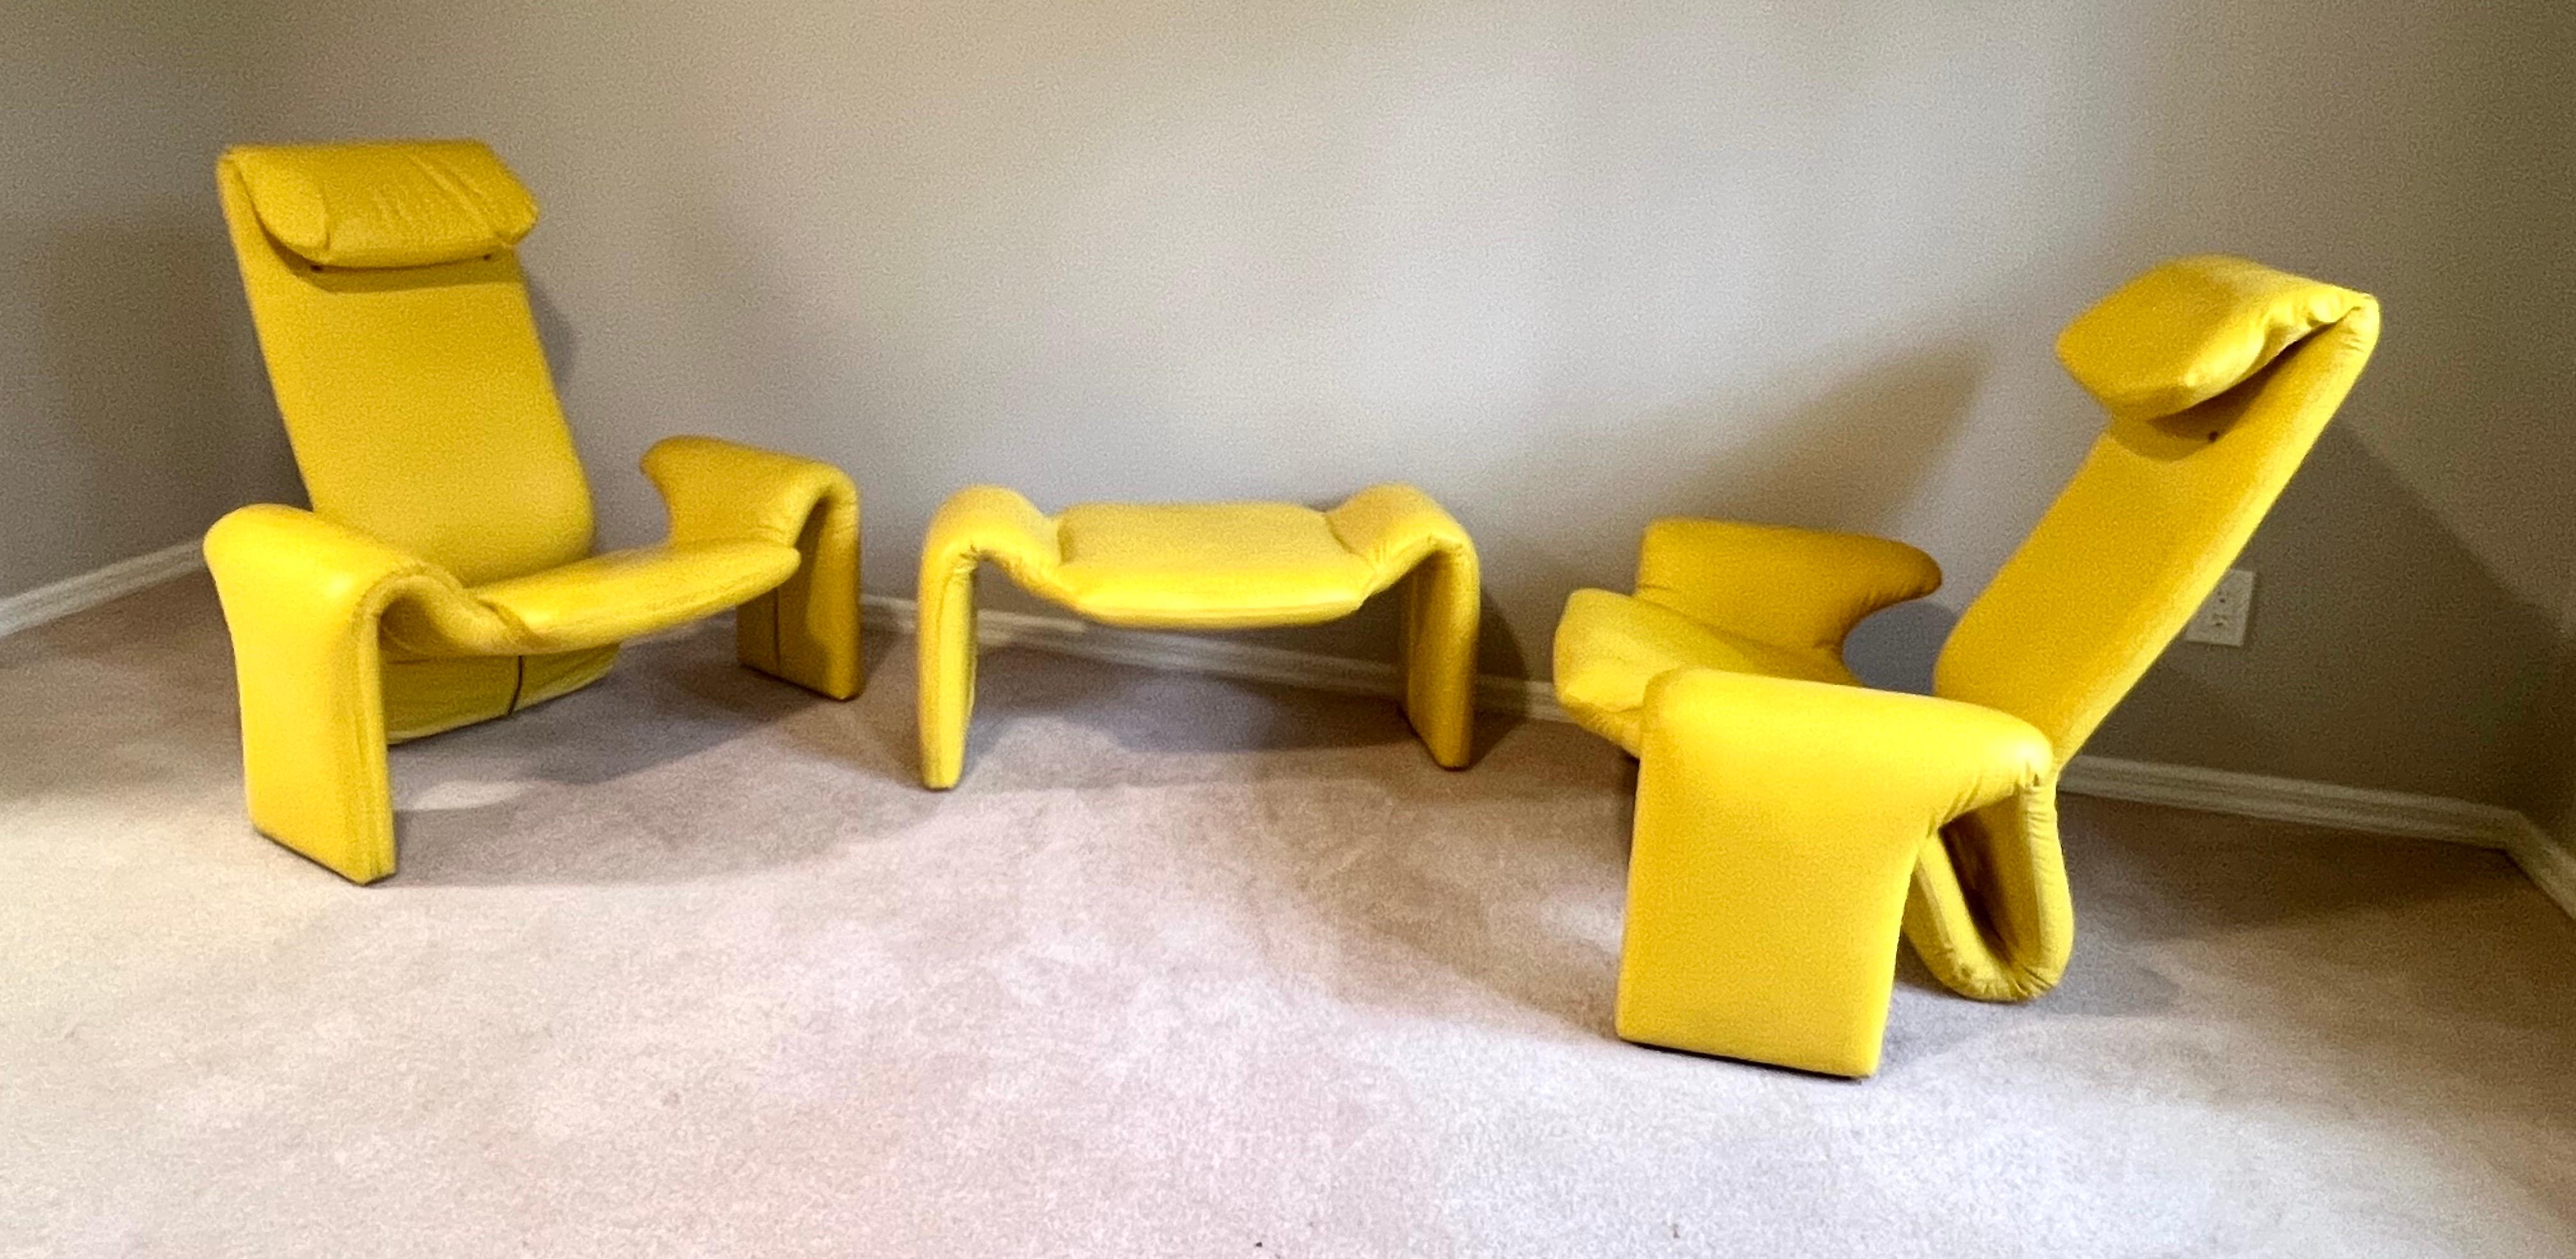 Rare et important ensemble de 2 fauteuils / Lounge Chairs et 1 Ottoman / Bench / Stool du Mid-Century Organic Modern français dans une forme futuriste légendaire. Toutes les pièces sont recouvertes d'un simili cuir jaune dynamique et attribuées à